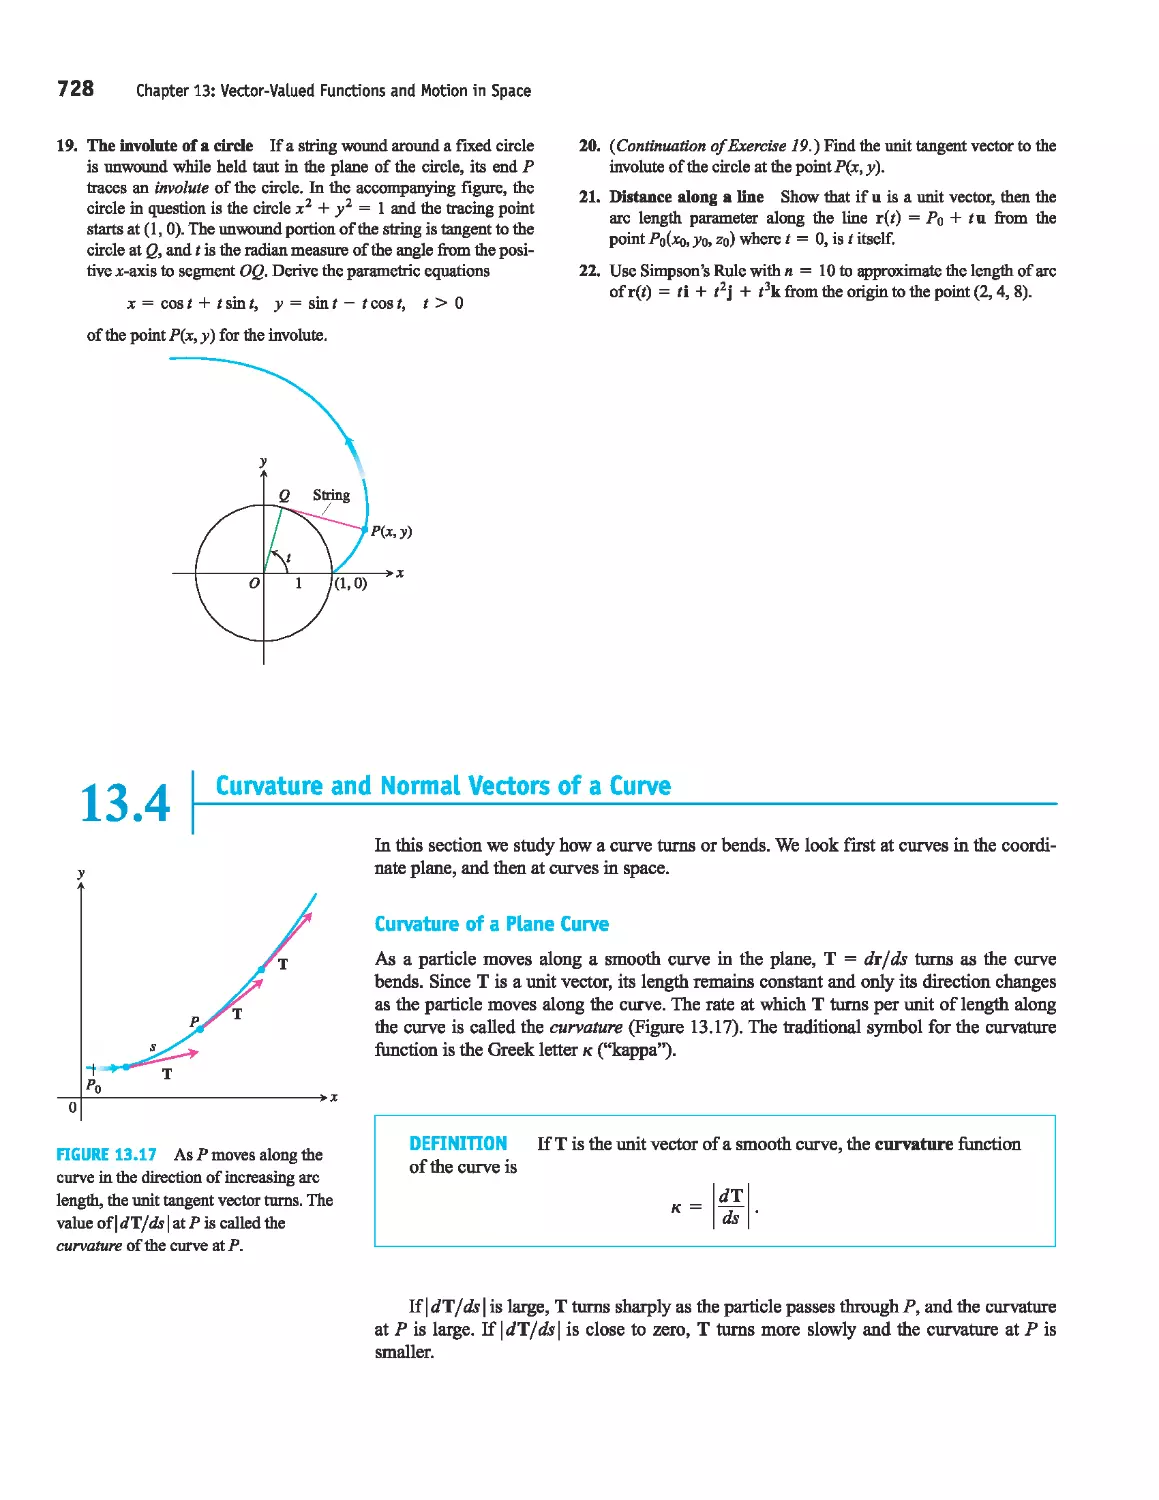 13.4 - Curvature and Normal Vectors of a Curve